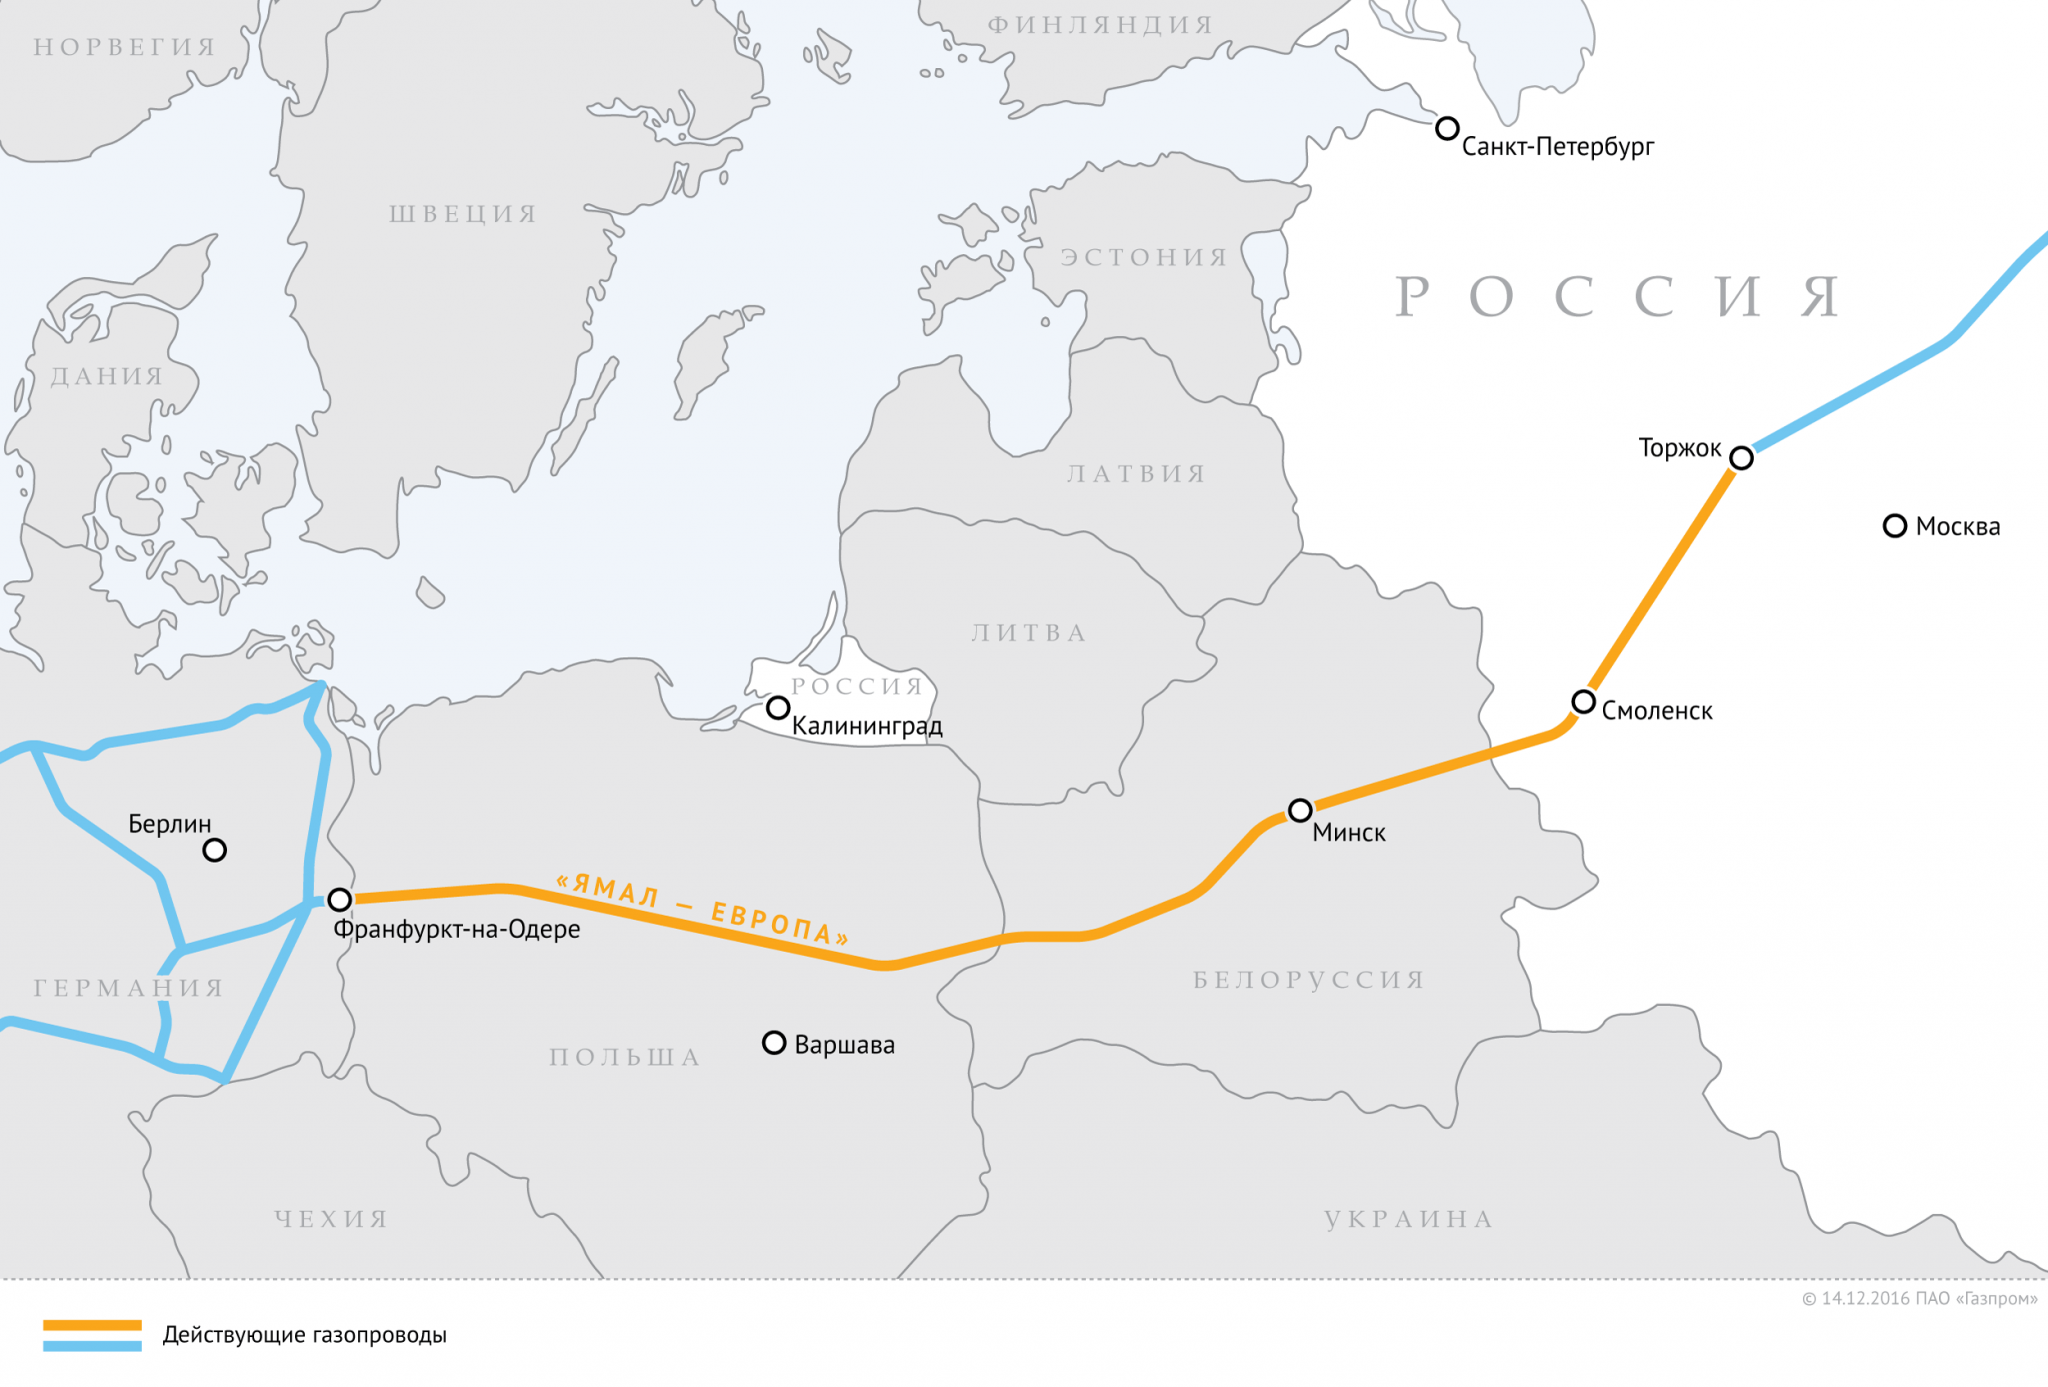 Лукашенко опять грозит Европе перекрыть транзит российского газа, а Песков успокаивает